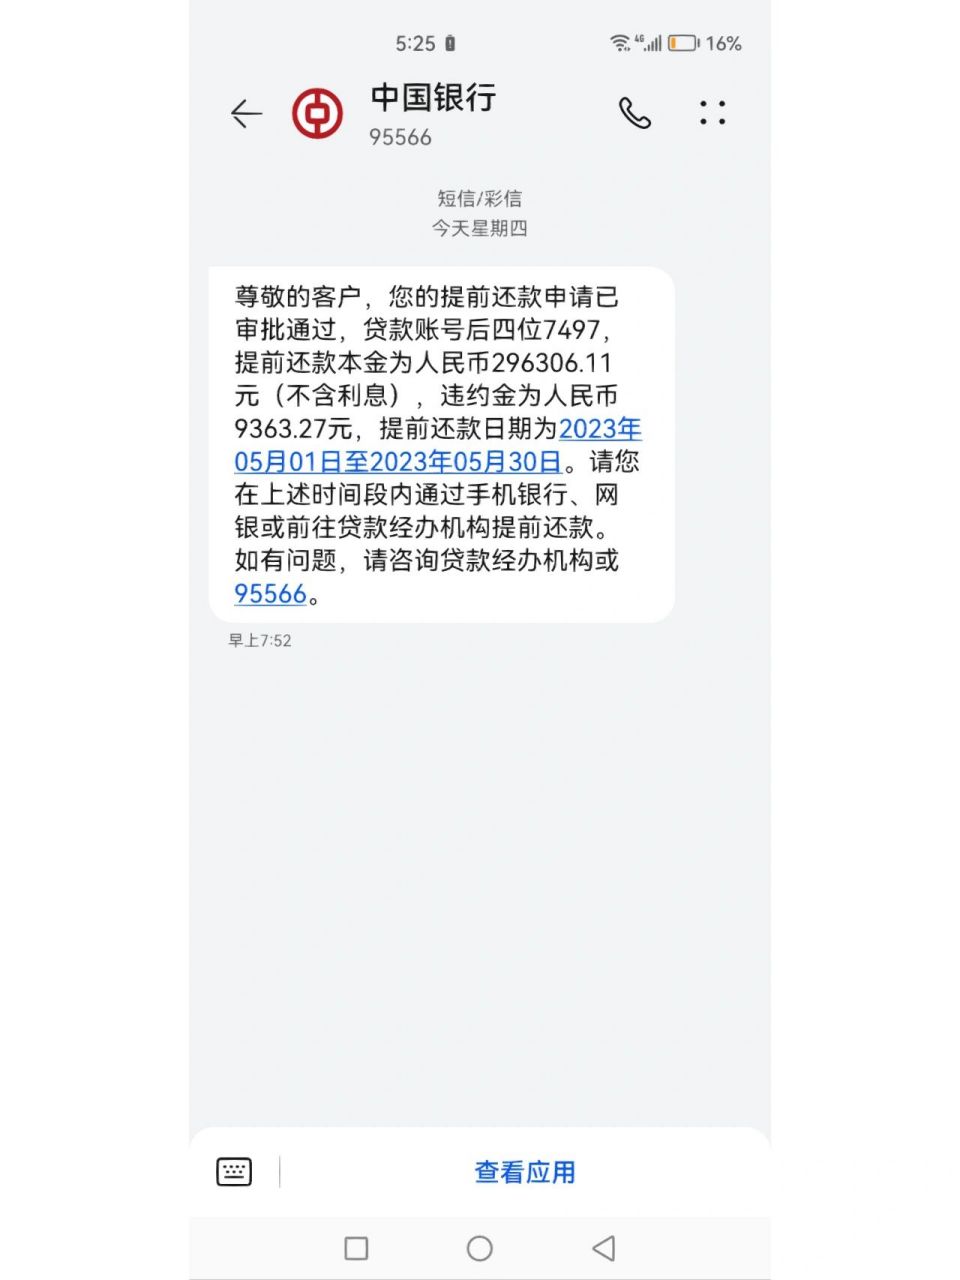 中国银行到账短信内容图片